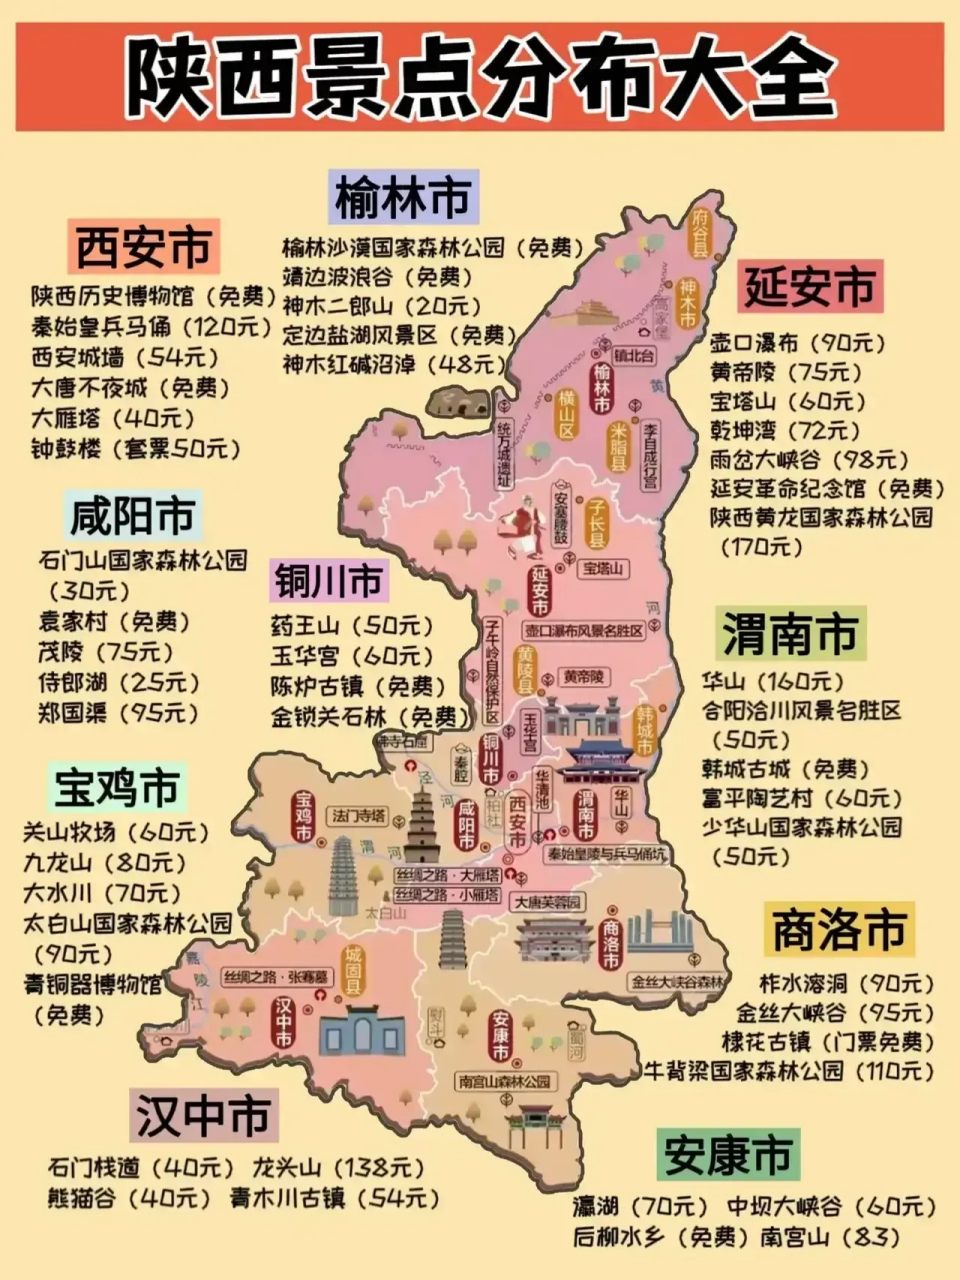 陕西景点分布大全图片,作为我国西部的陕西省知名旅游景点数量还是